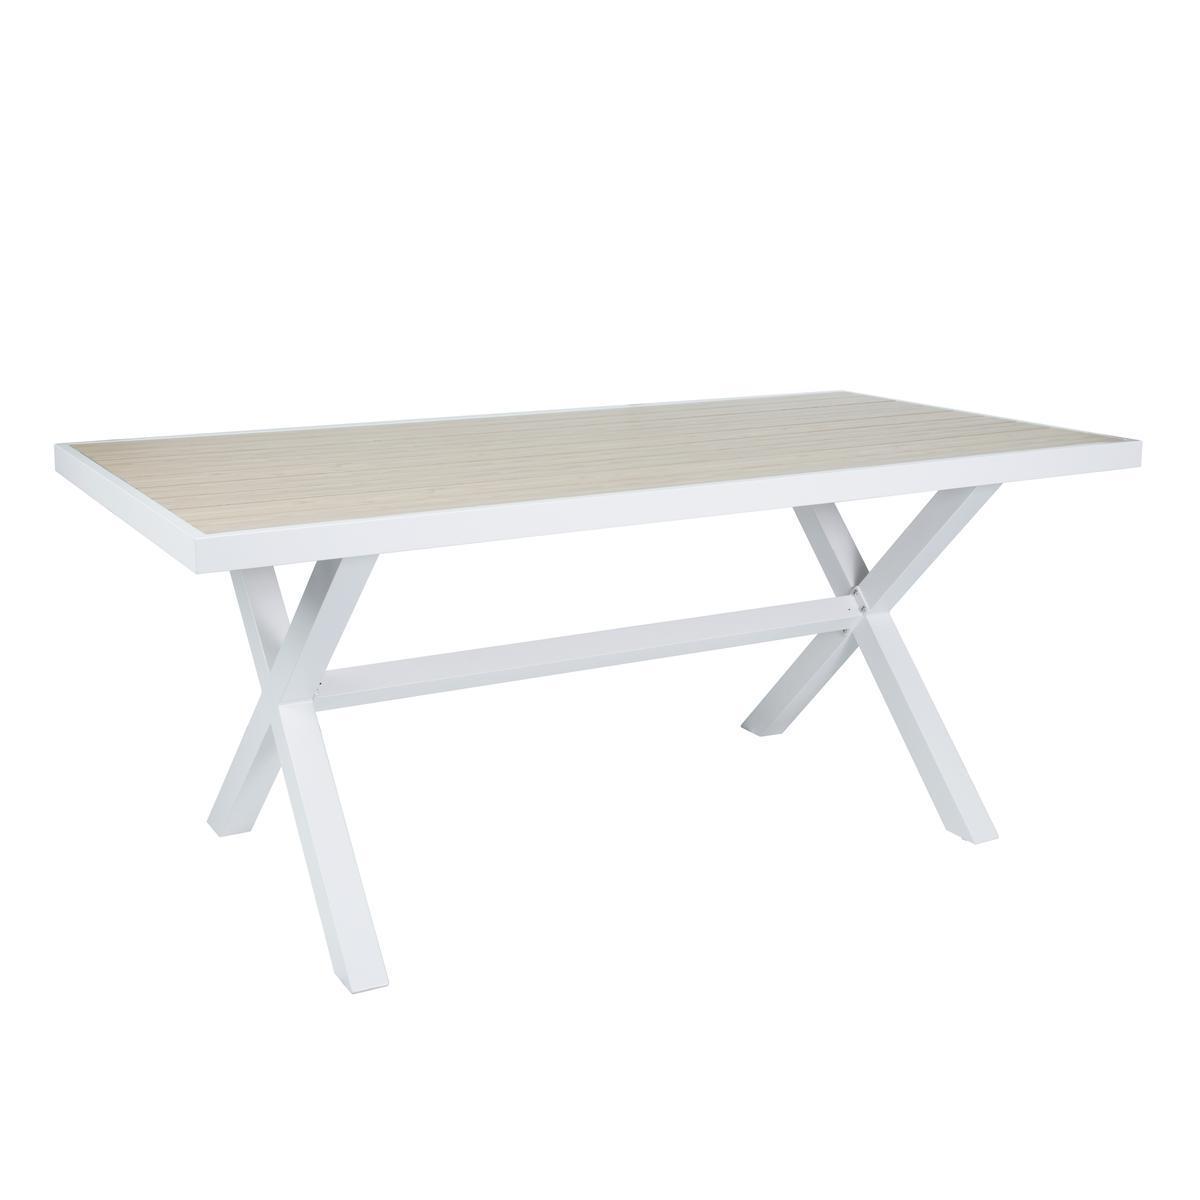 Table Lucia imitation bois - L 180 x H 90 x P 74 cm - Blanc, marron